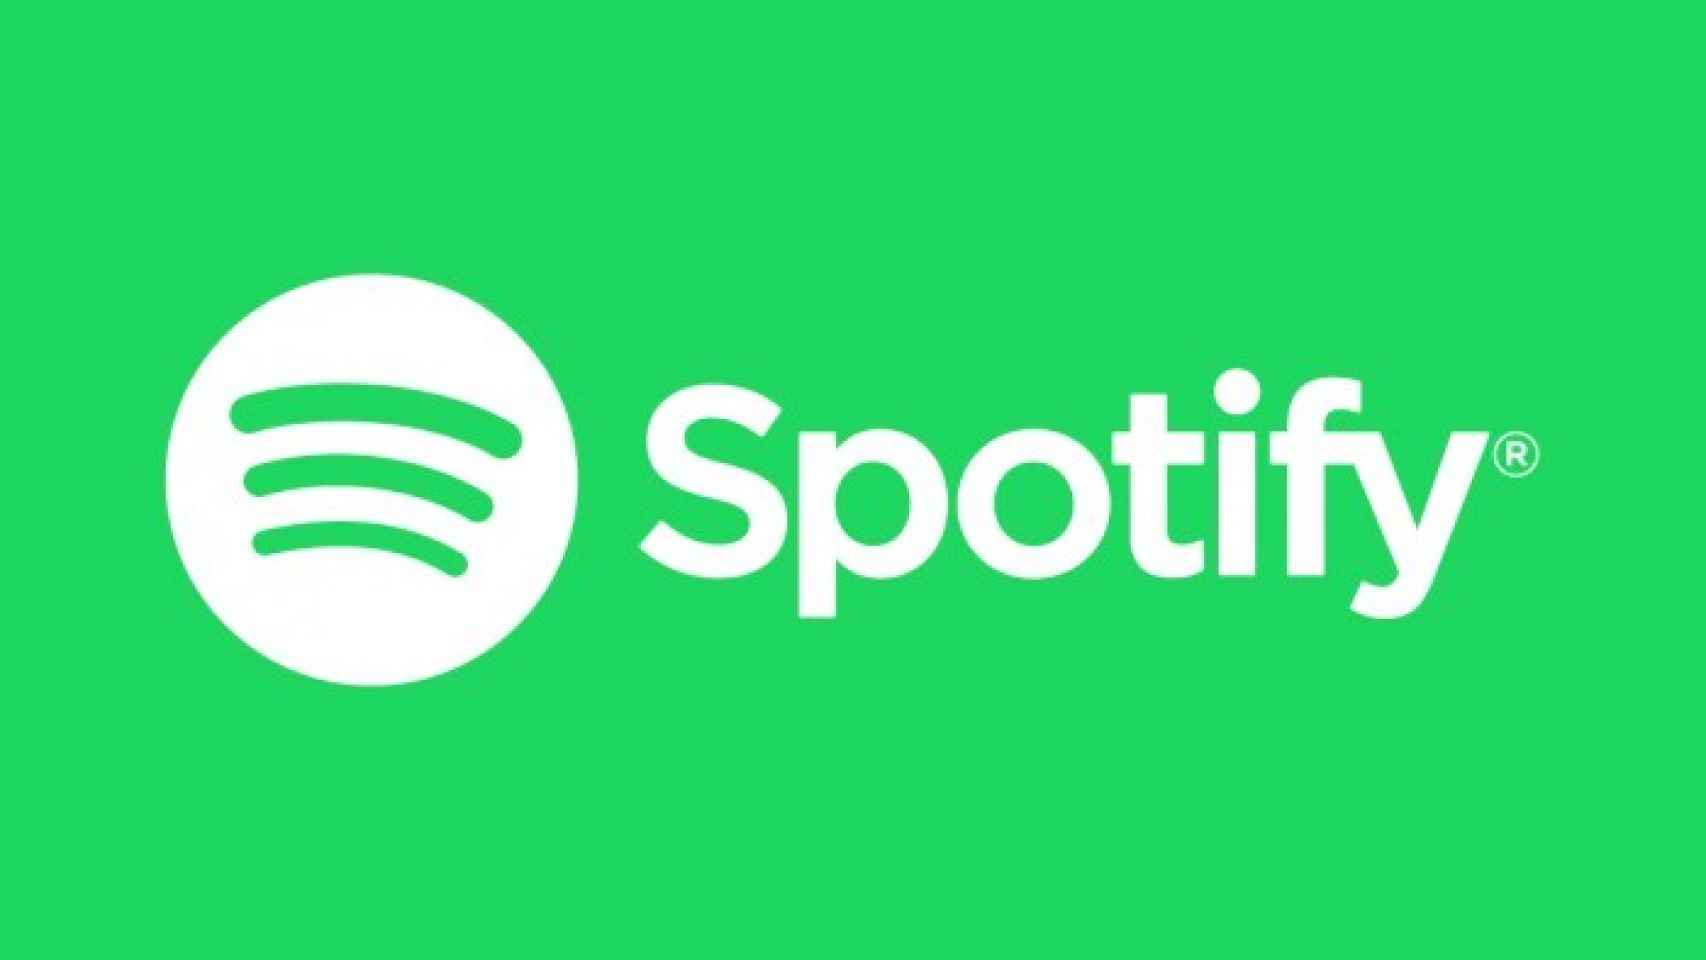 Spotify alcanza los 30 millones de suscriptores